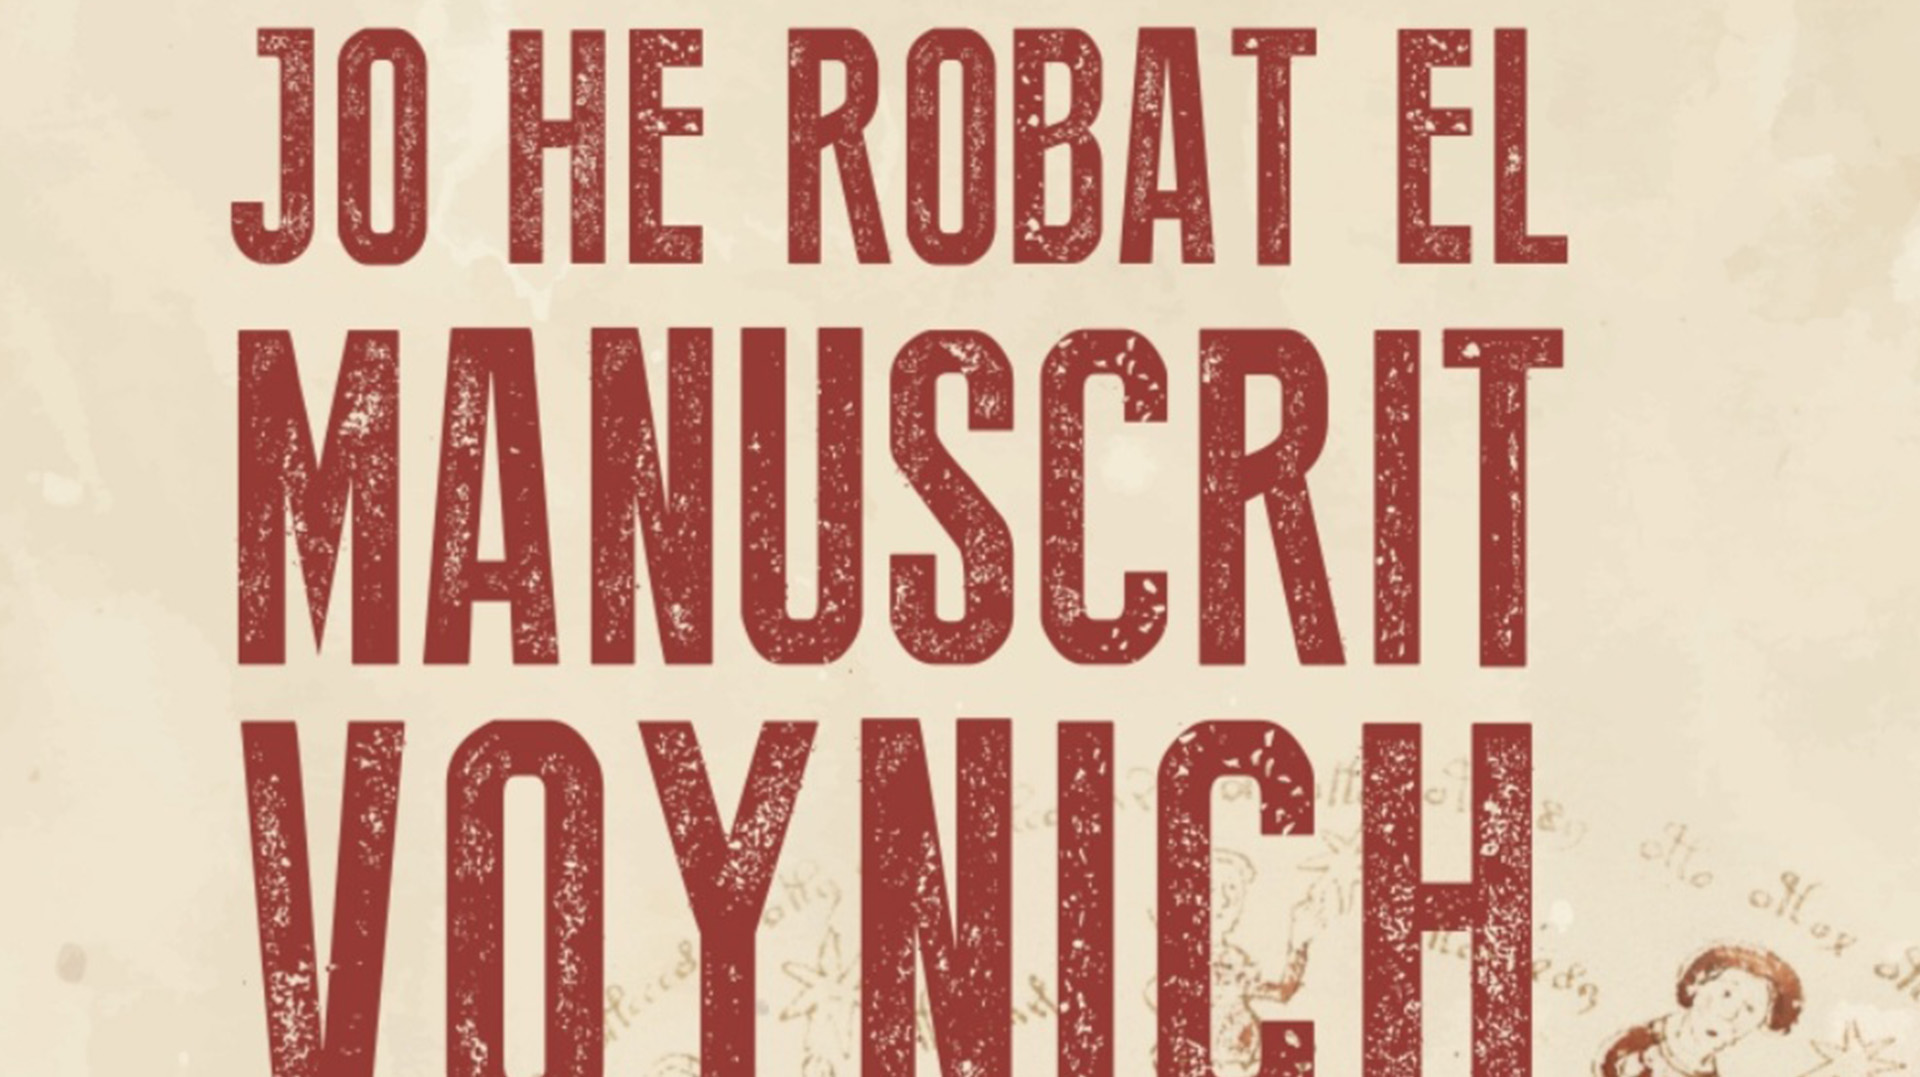 Xerrada sobre el misteriós manuscrit Voynich i presentació de la novel·la ‘Jo he robat el manuscrit Voynich’